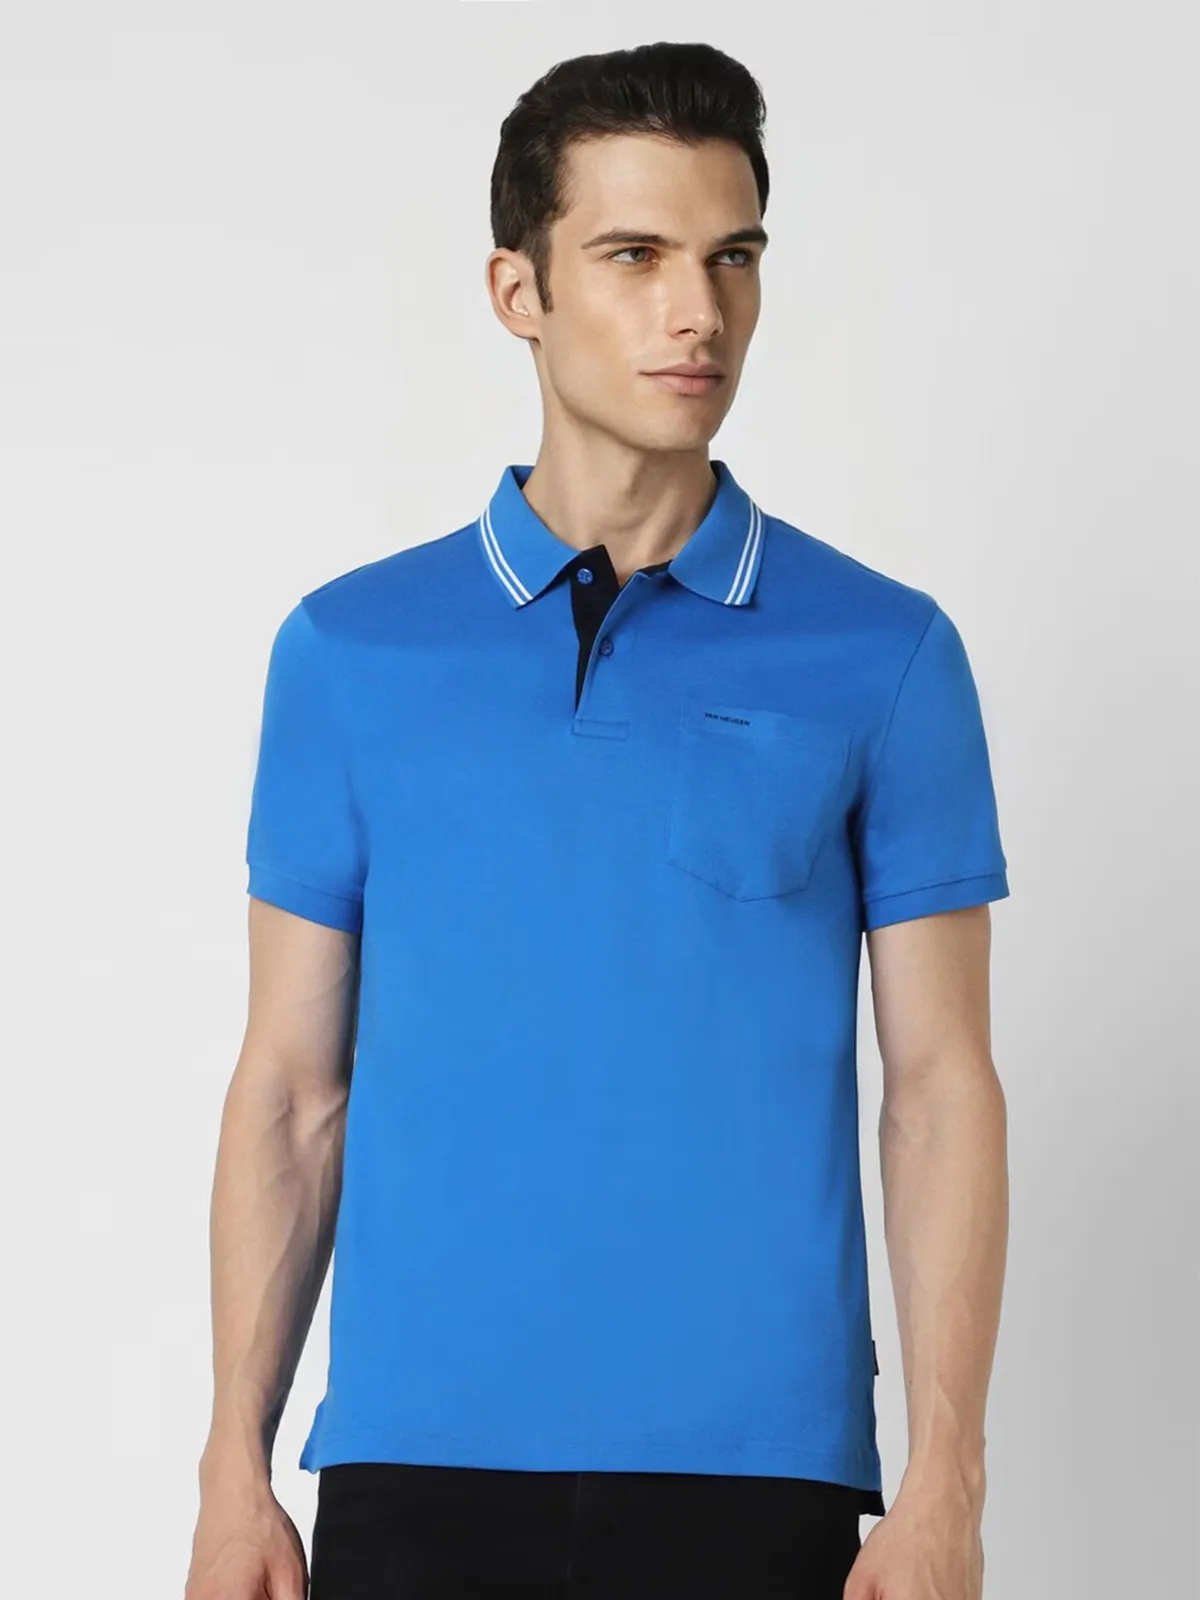 VAN HEUSEN blue plain cotton t-shirt